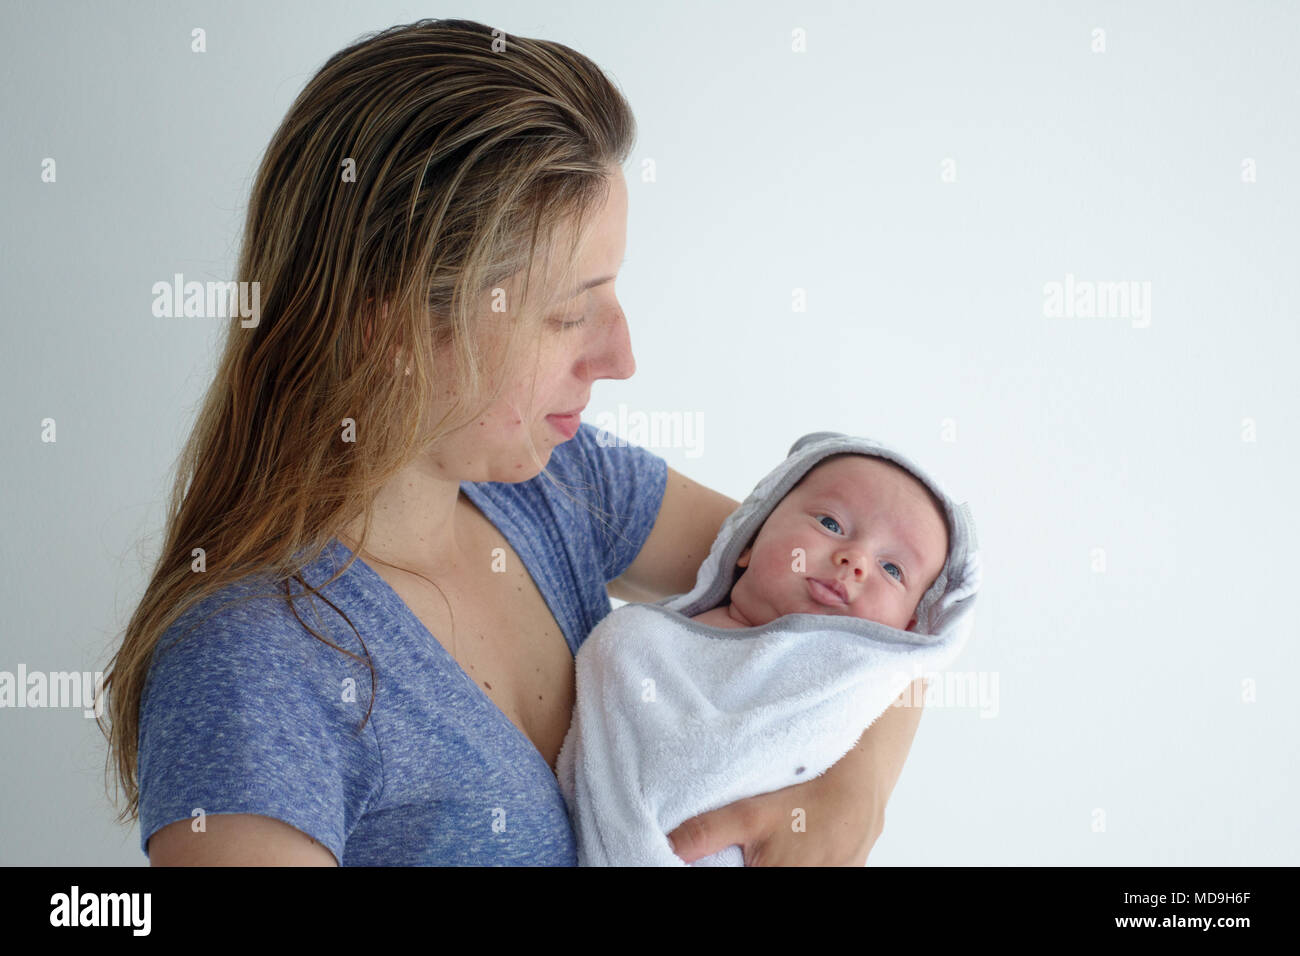 Madre sosteniendo a su pequeño y lindo bebé envuelto en una toalla Foto de stock